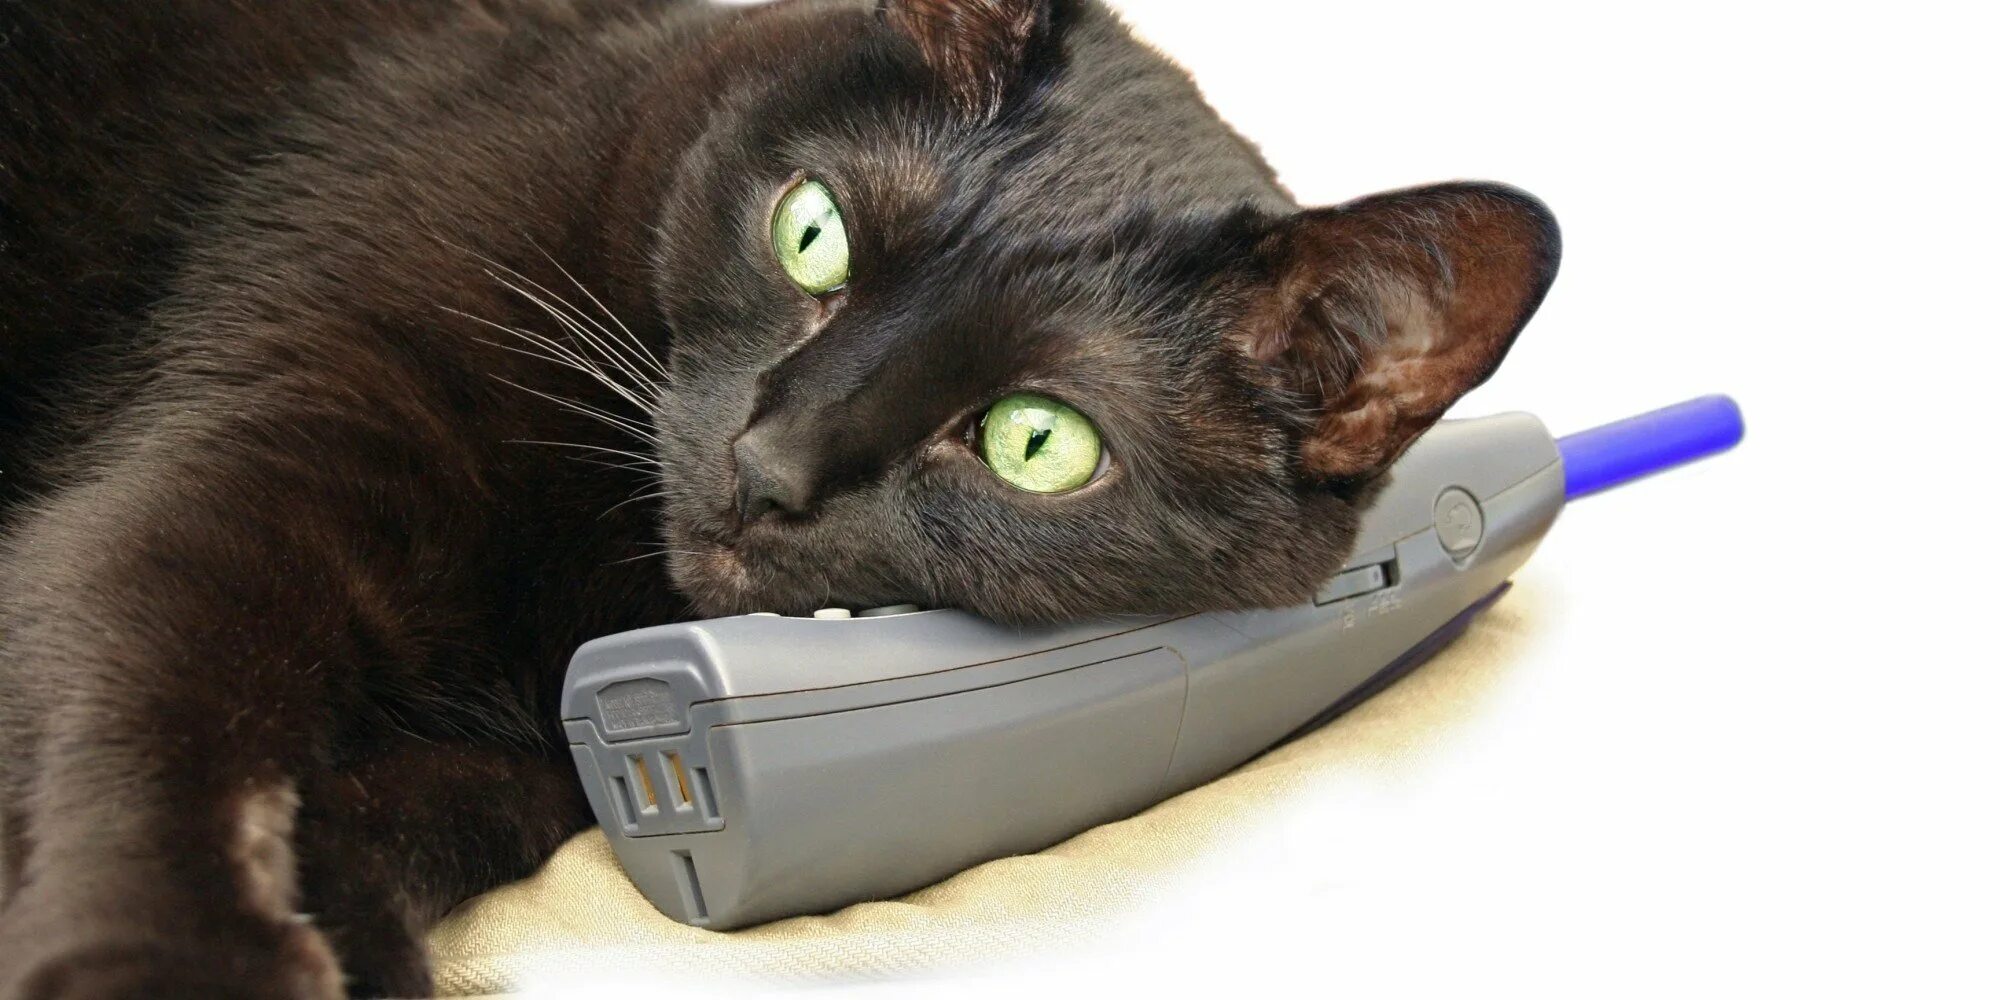 Поговори на кошачьем. Кошка с телефоном. Котенок с телефоном. Кот с мобильником. Кот с телефонной трубкой.